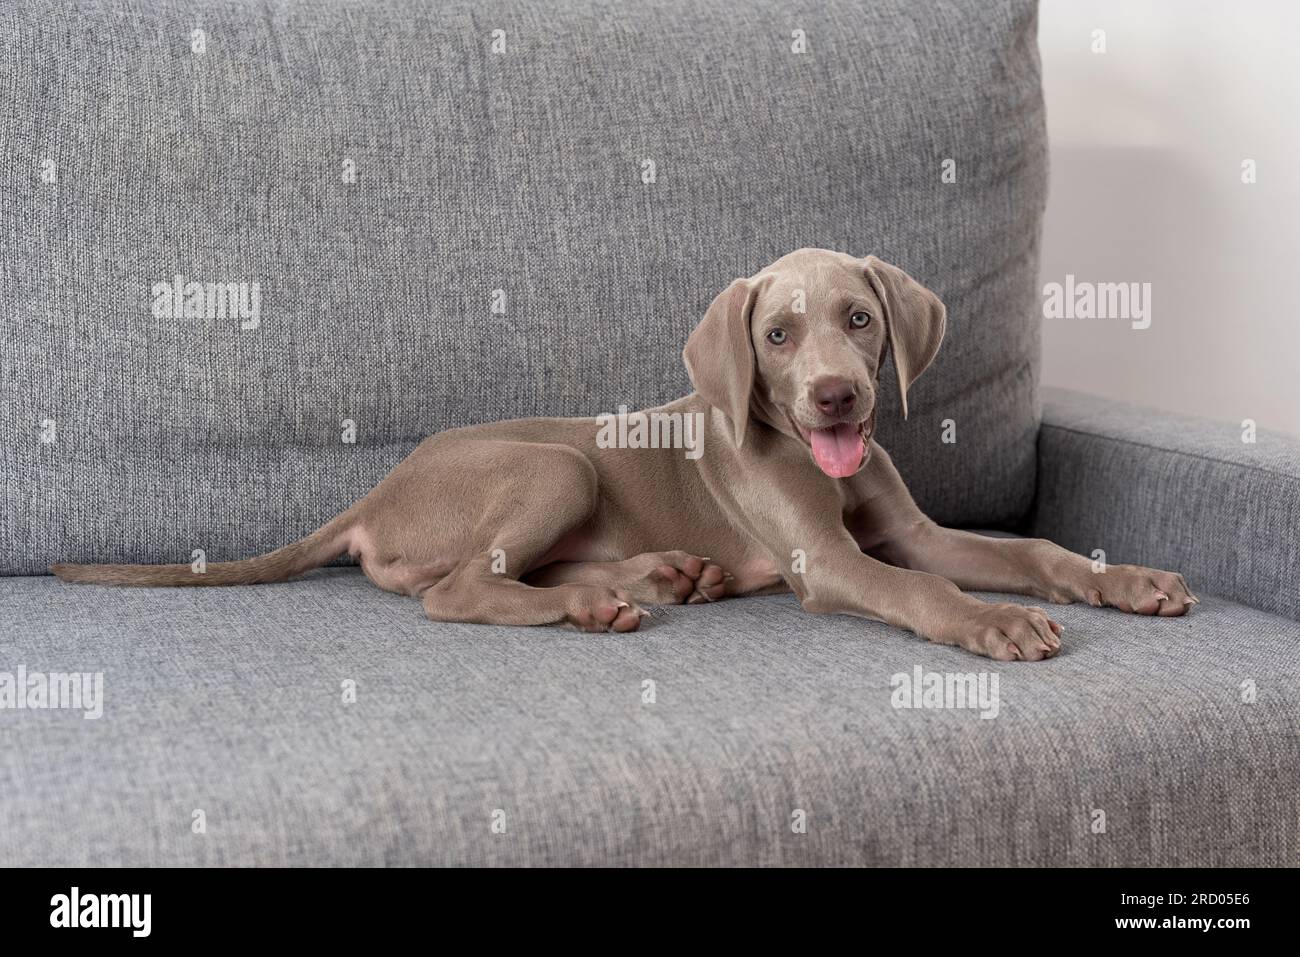 Cucciolo di cane Weimaraner sdraiato sul divano con la lingua fuori. Razza di cane dai capelli corti grigia con occhi blu. Benessere degli animali domestici Foto Stock